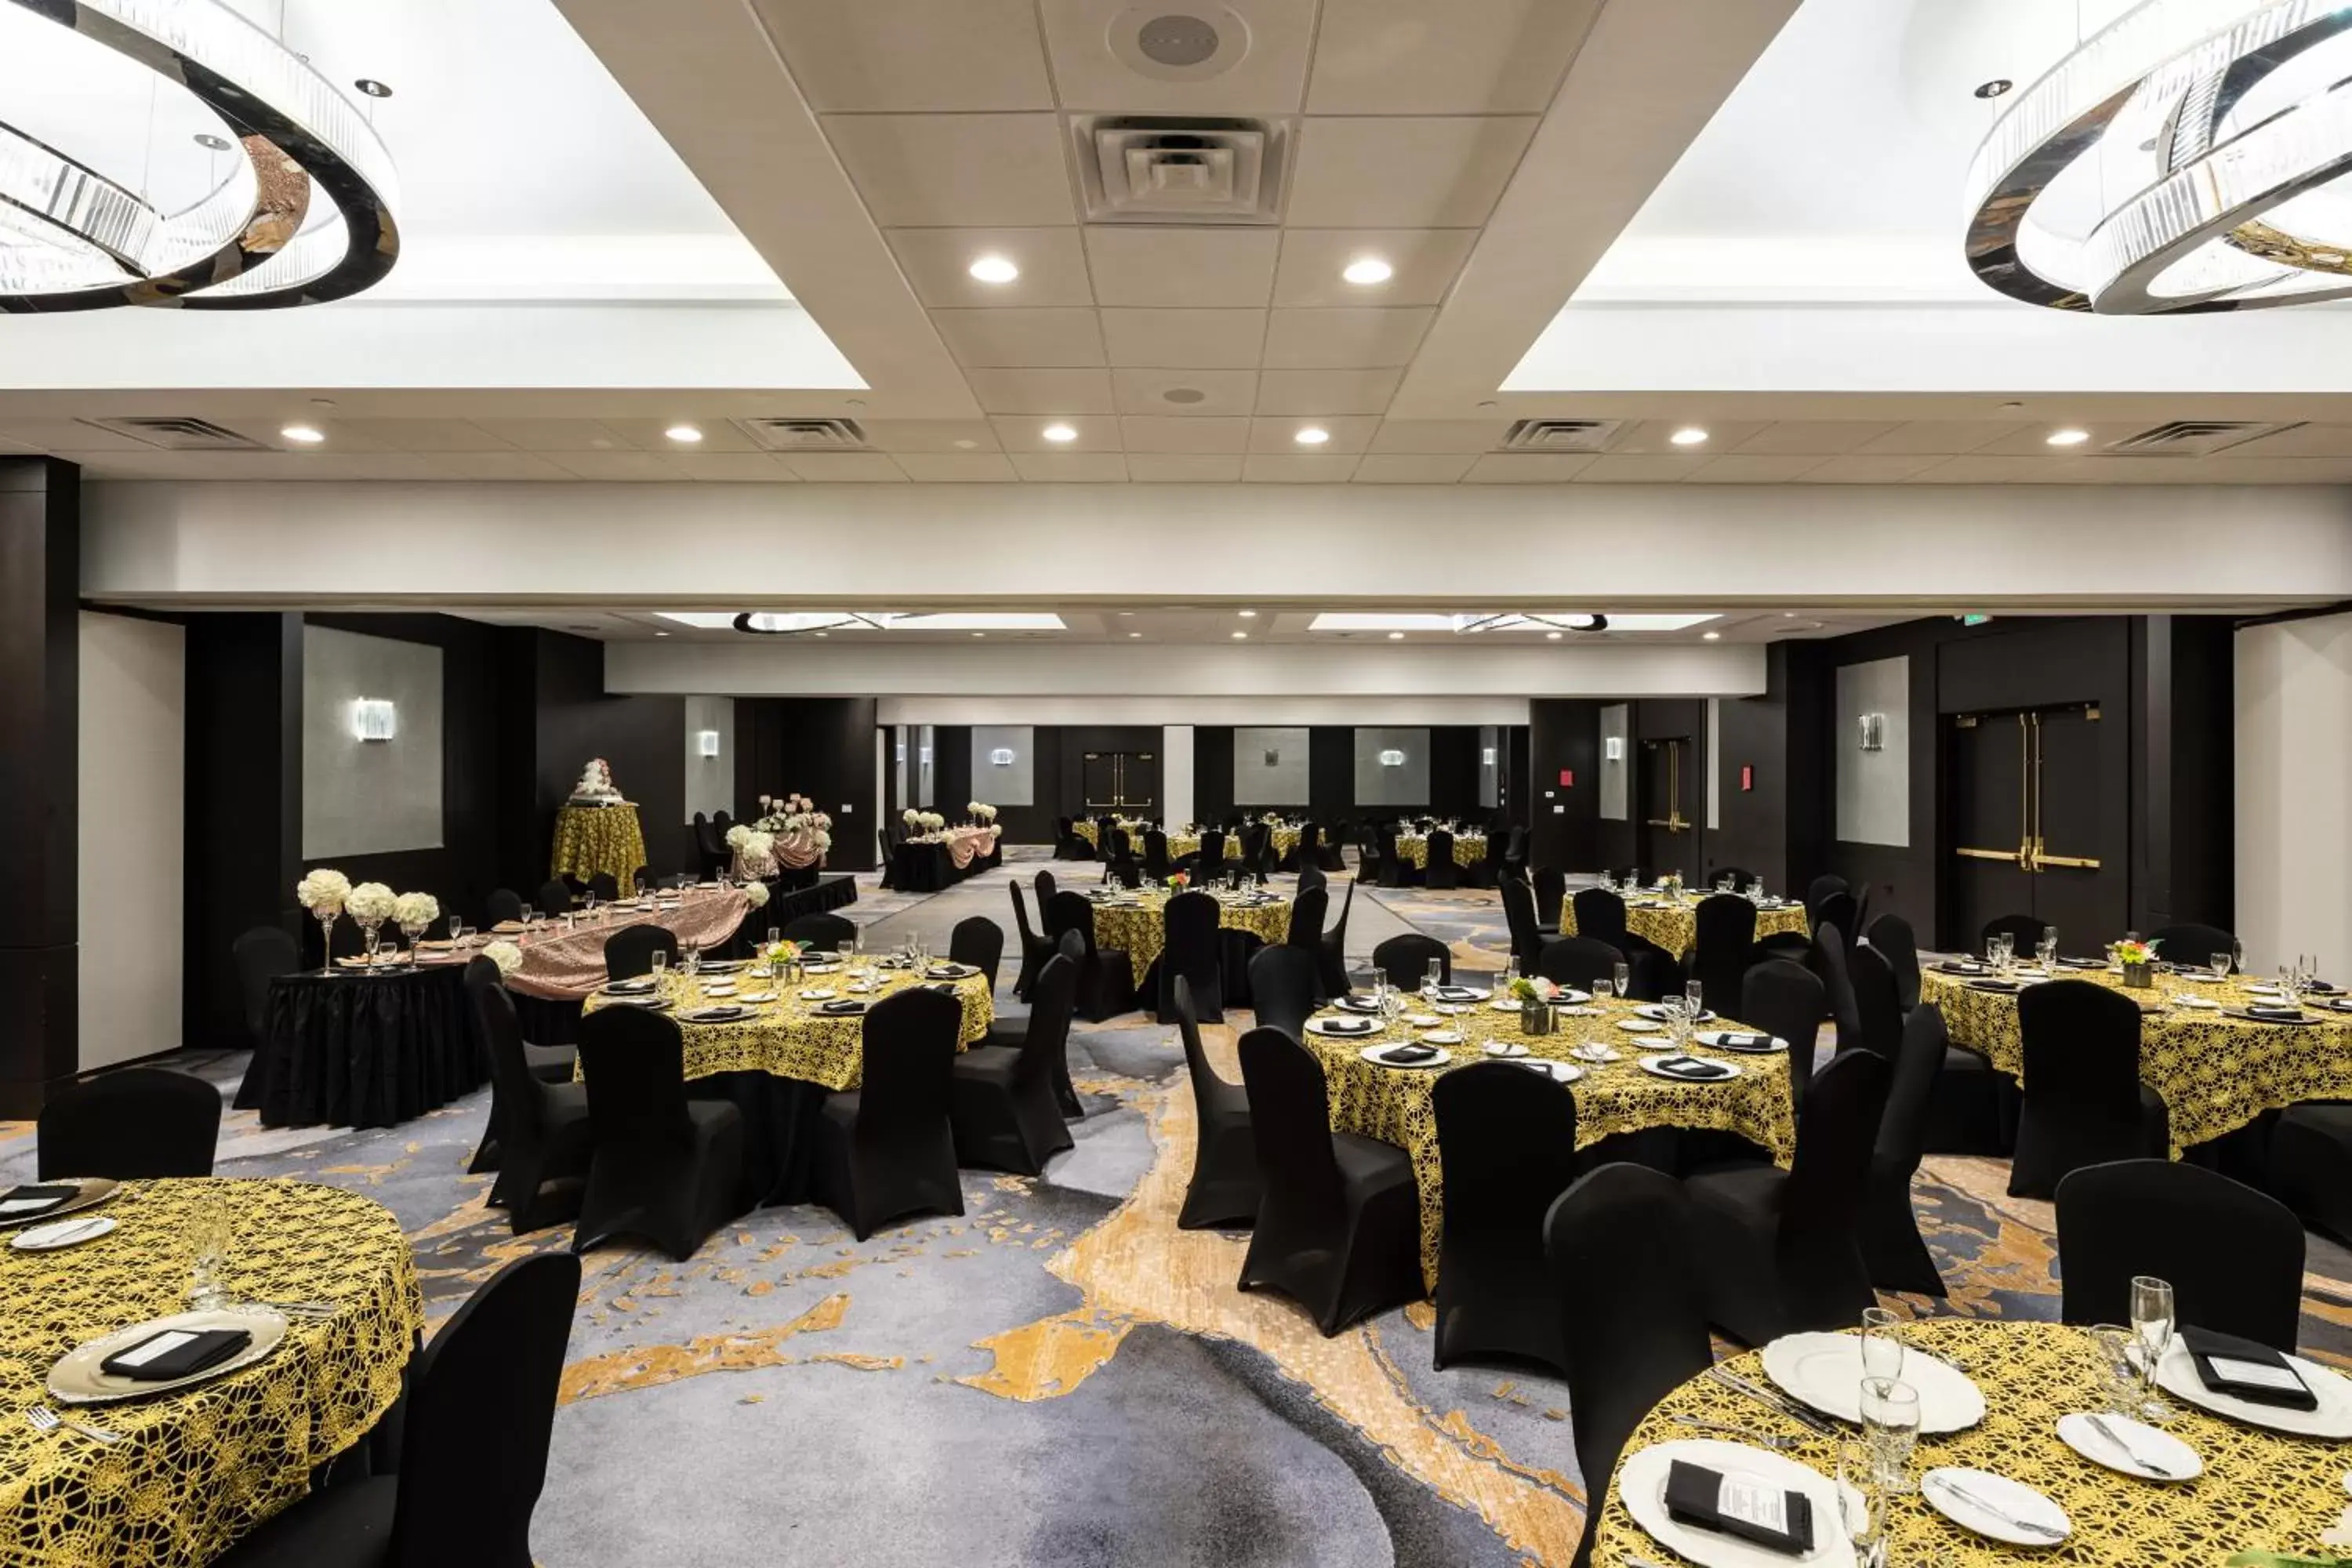 Banquet/Function facilities, Banquet Facilities in APA Hotel Woodbridge